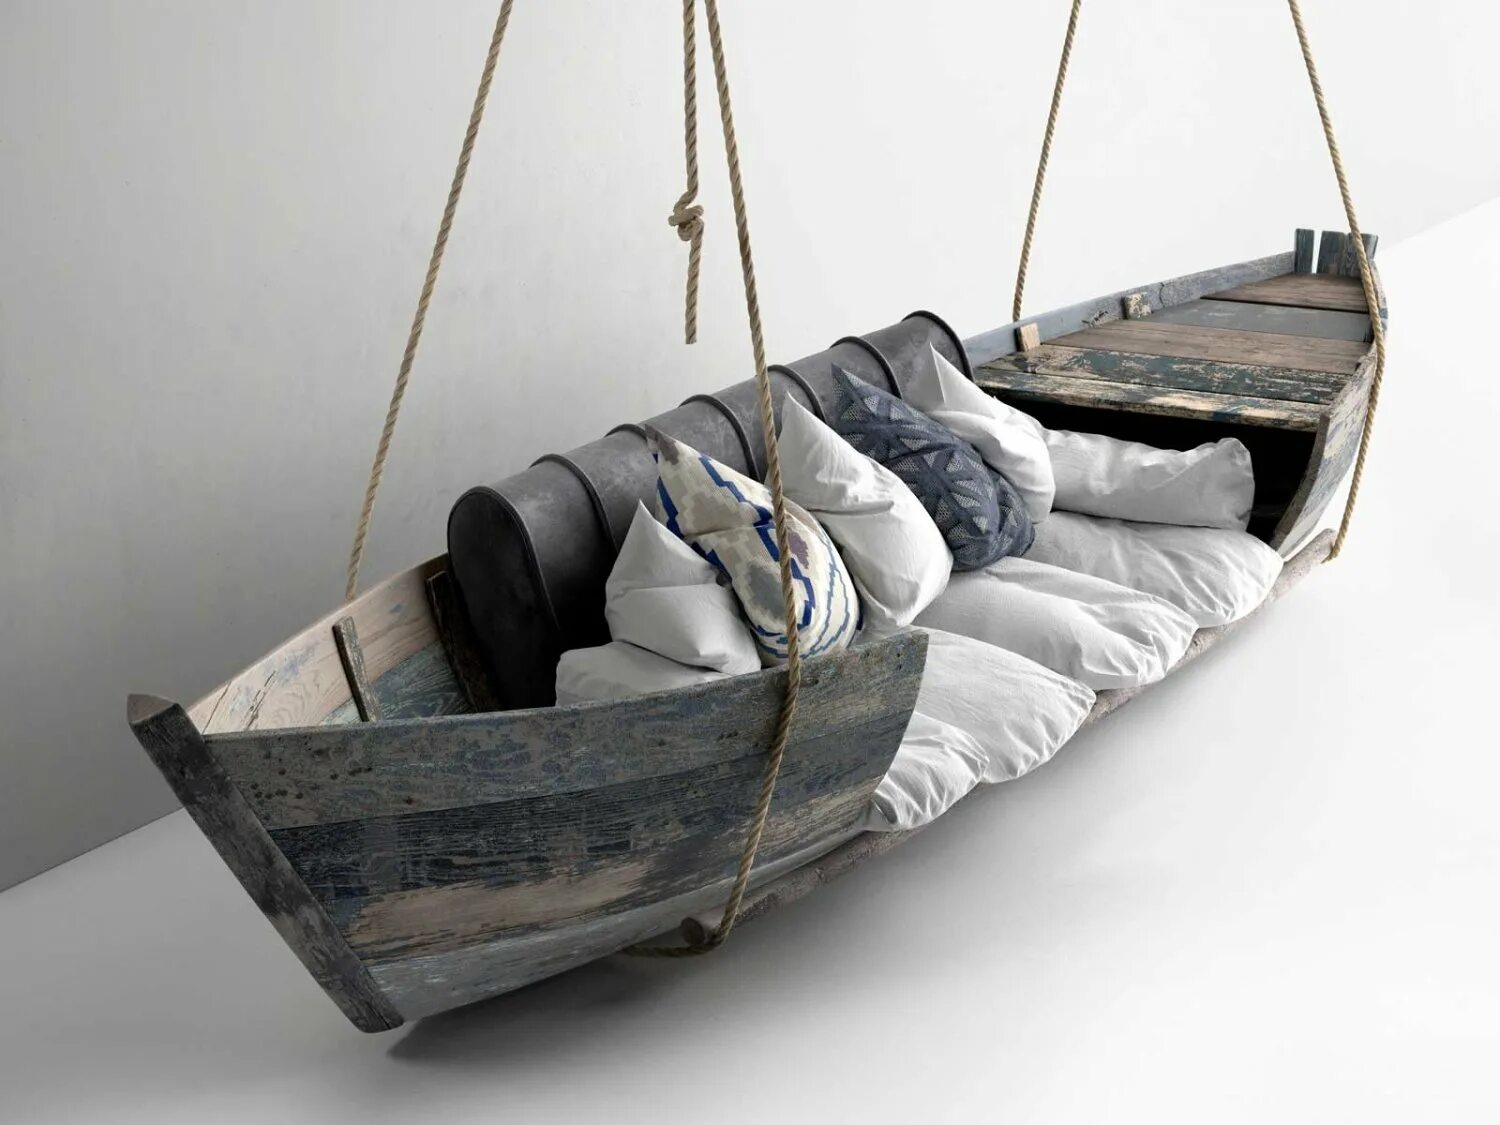 Creative unsinkable boat decor. Лодка в интерьере. Старая лодка в интерьере. Деревянная лодка в интерьере. Мебель из старых лодок.